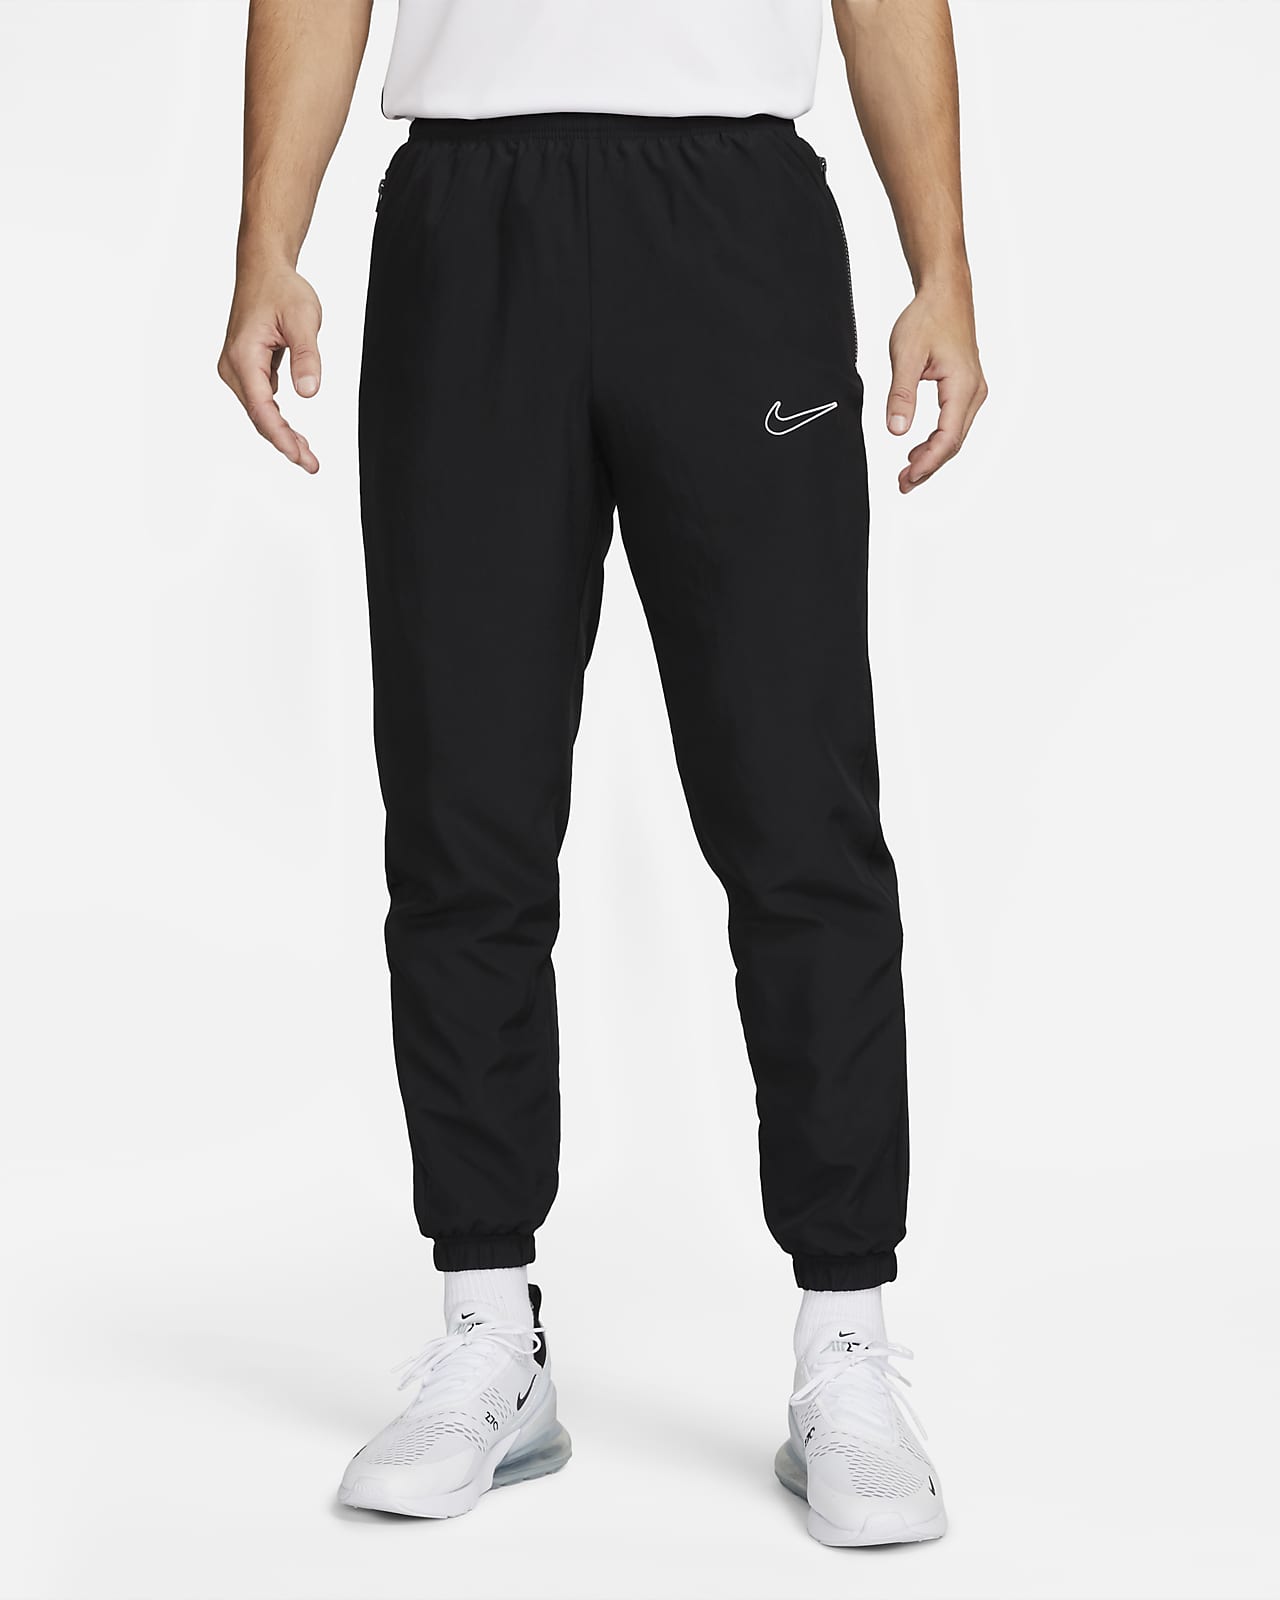 Pants de fútbol para hombre Nike Nike.com